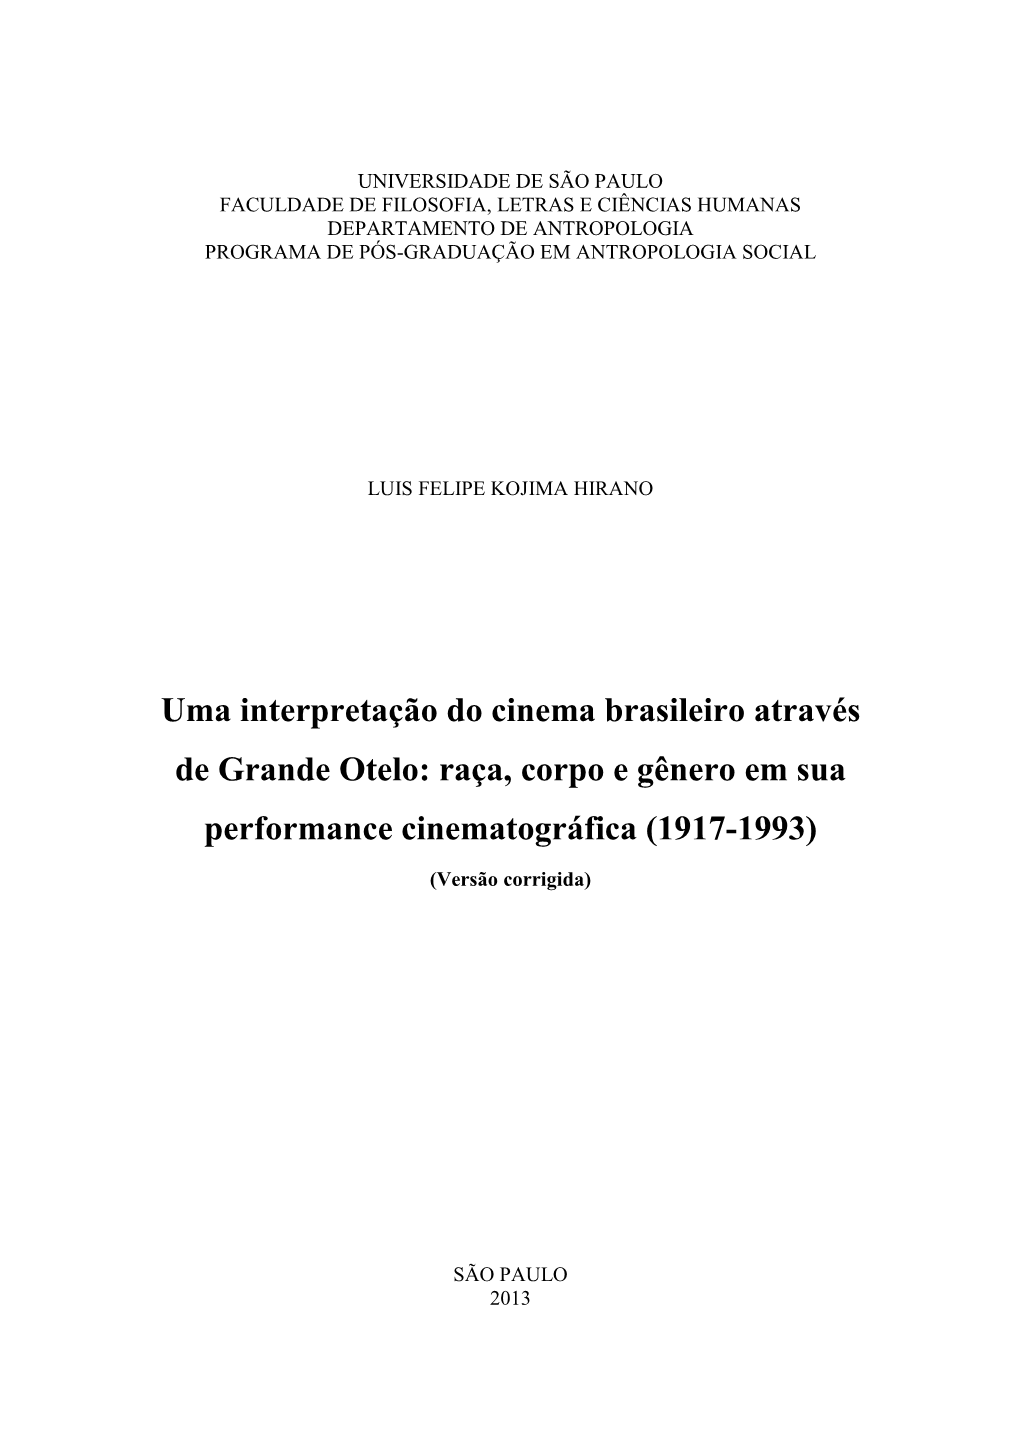 Uma Interpretação Do Cinema Brasileiro Através De Grande Otelo: Raça, Corpo E Gênero Em Sua Performance Cinematográfica (1917-1993)